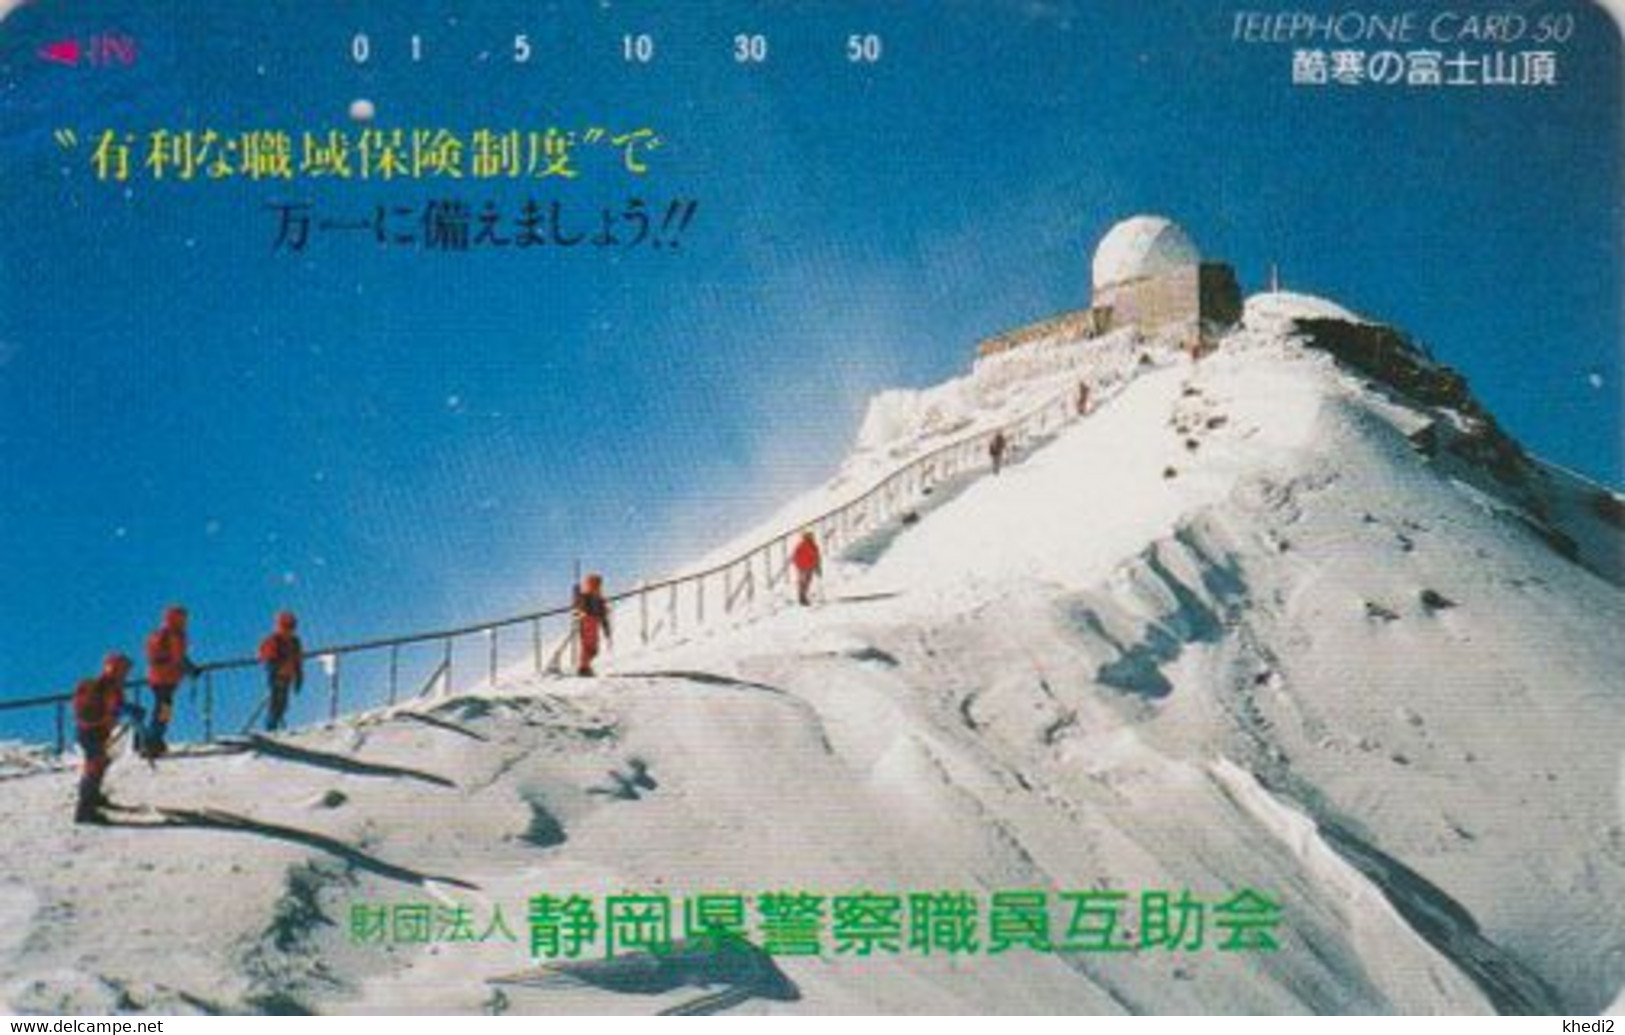 Télécarte JAPON / 290-7986 - Sport - ESCALADE Montagne - CLIMBING JAPAN Phonecard Mountain - Berg Steigen - 17 - Montagnes